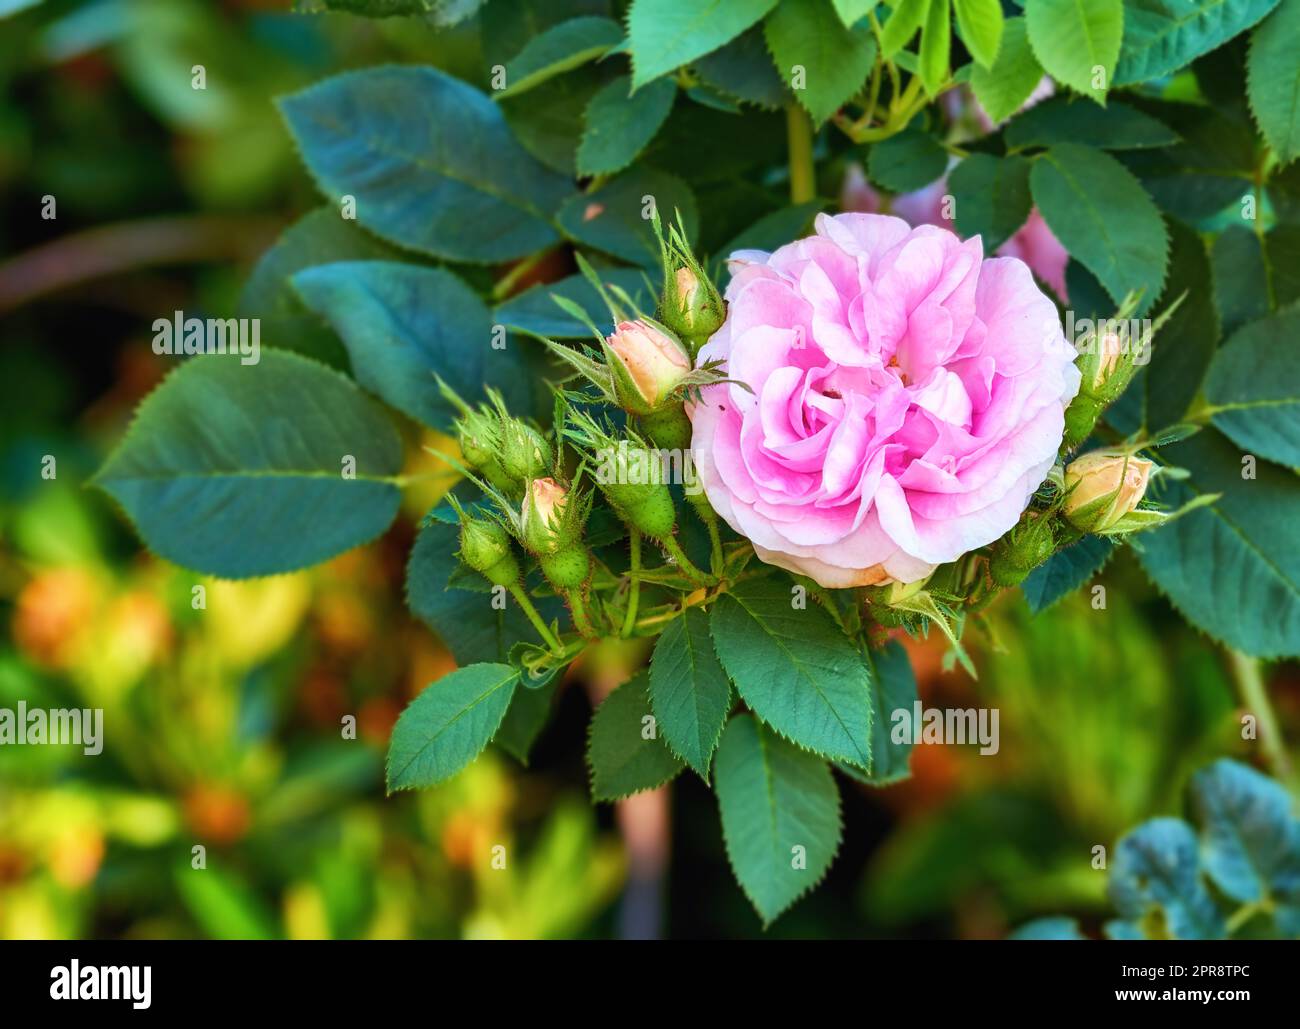 Wunderschöne rosa Rosenblume, die in einem Garten wächst. Nahaufnahme heller, mehrjährig blühender Geranium-Pflanzen in einem grünen Park. Farbenfrohe Gartenblüten für die Dekoration im Freien im Frühling Stockfoto